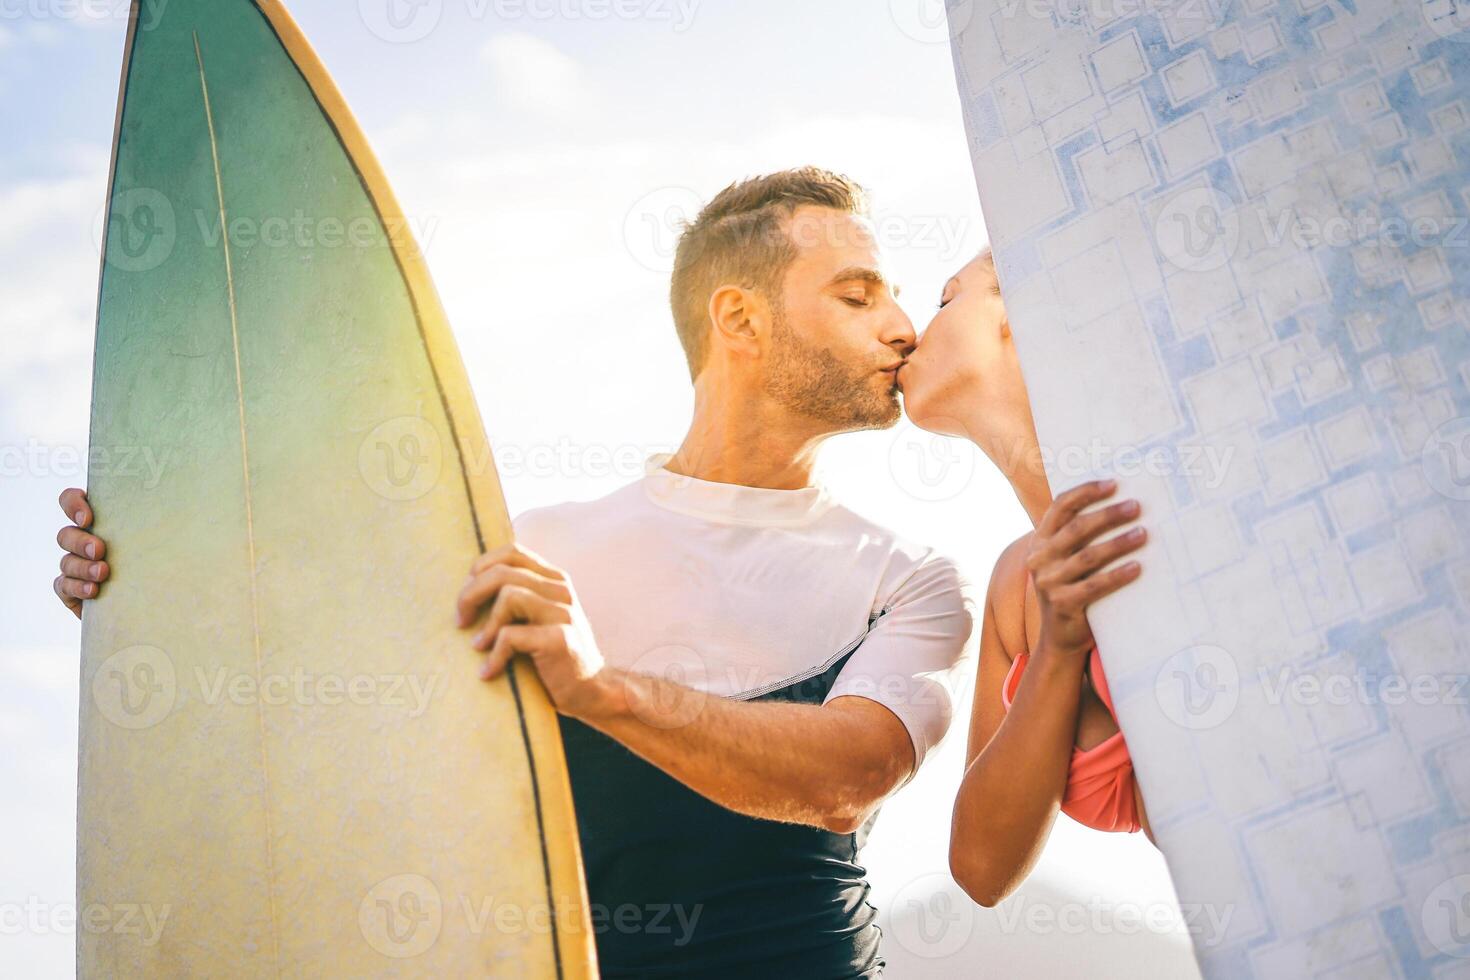 Gezondheid jong paar van surfers zoenen Bij zonsondergang Aan de strand Holding surfplanken - gelukkig geliefden hebben een inschrijving moment met een kus terwijl surfing samen - mensen, liefde, sport en levensstijl concept foto